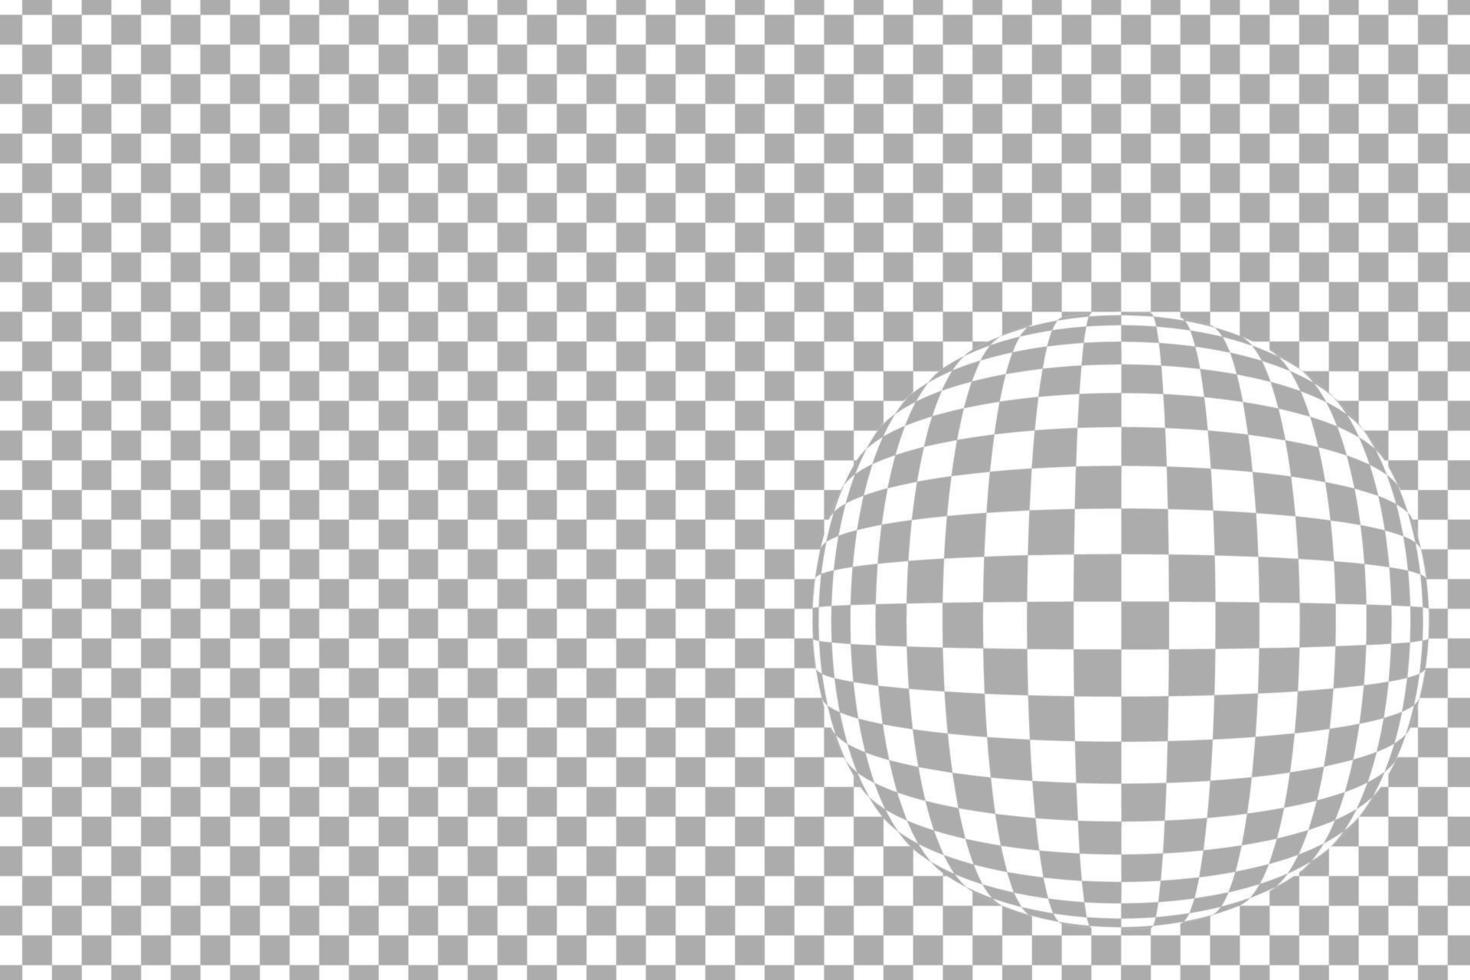 grårutigt mönster horisontellt med fisheye-linseffekt, vektorillustration vektor